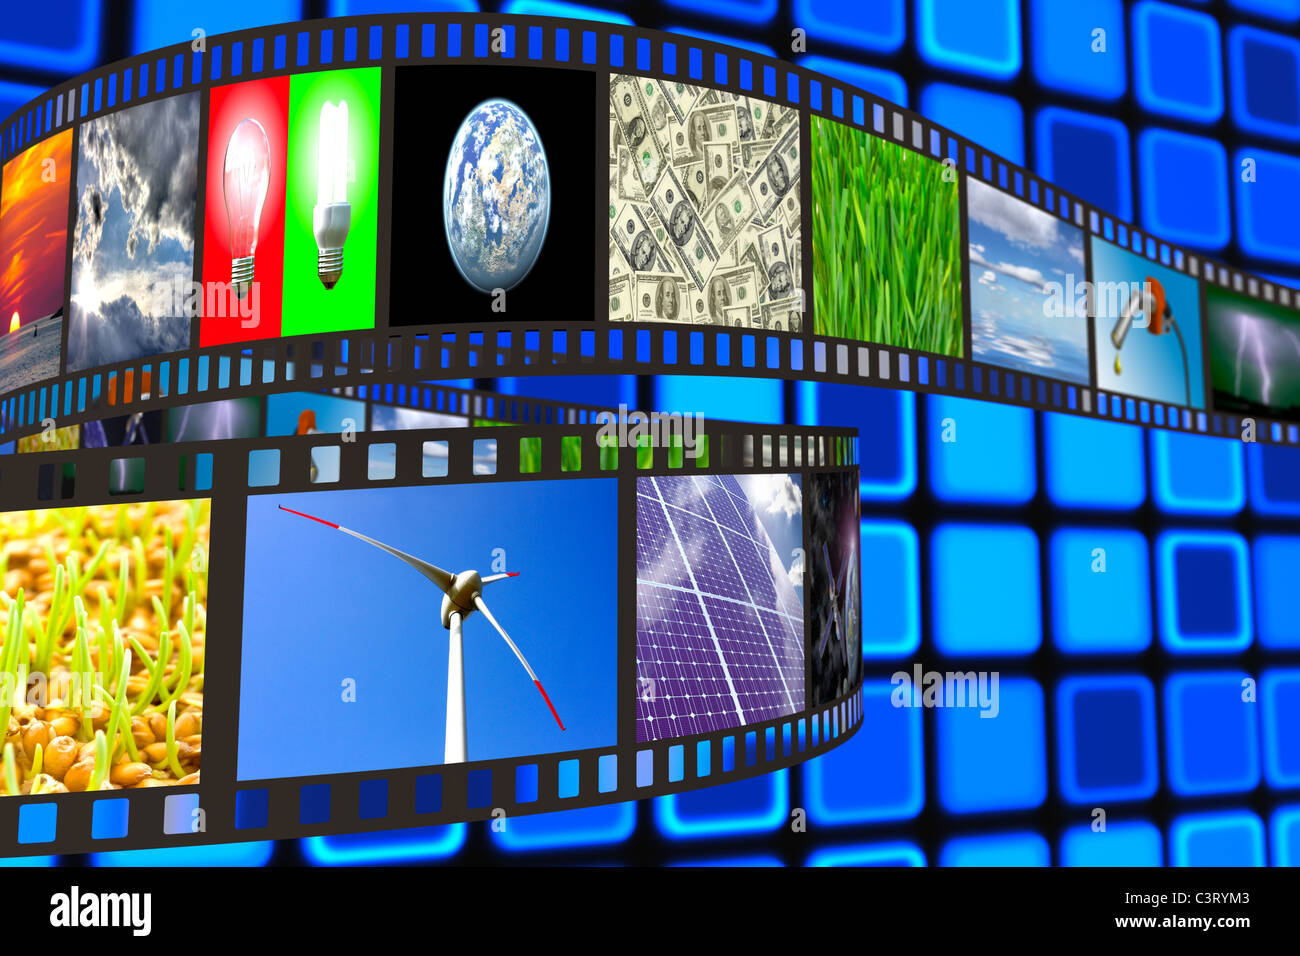 Film fixe avec la technologie et de l'environnement des images sur fond bleu Banque D'Images